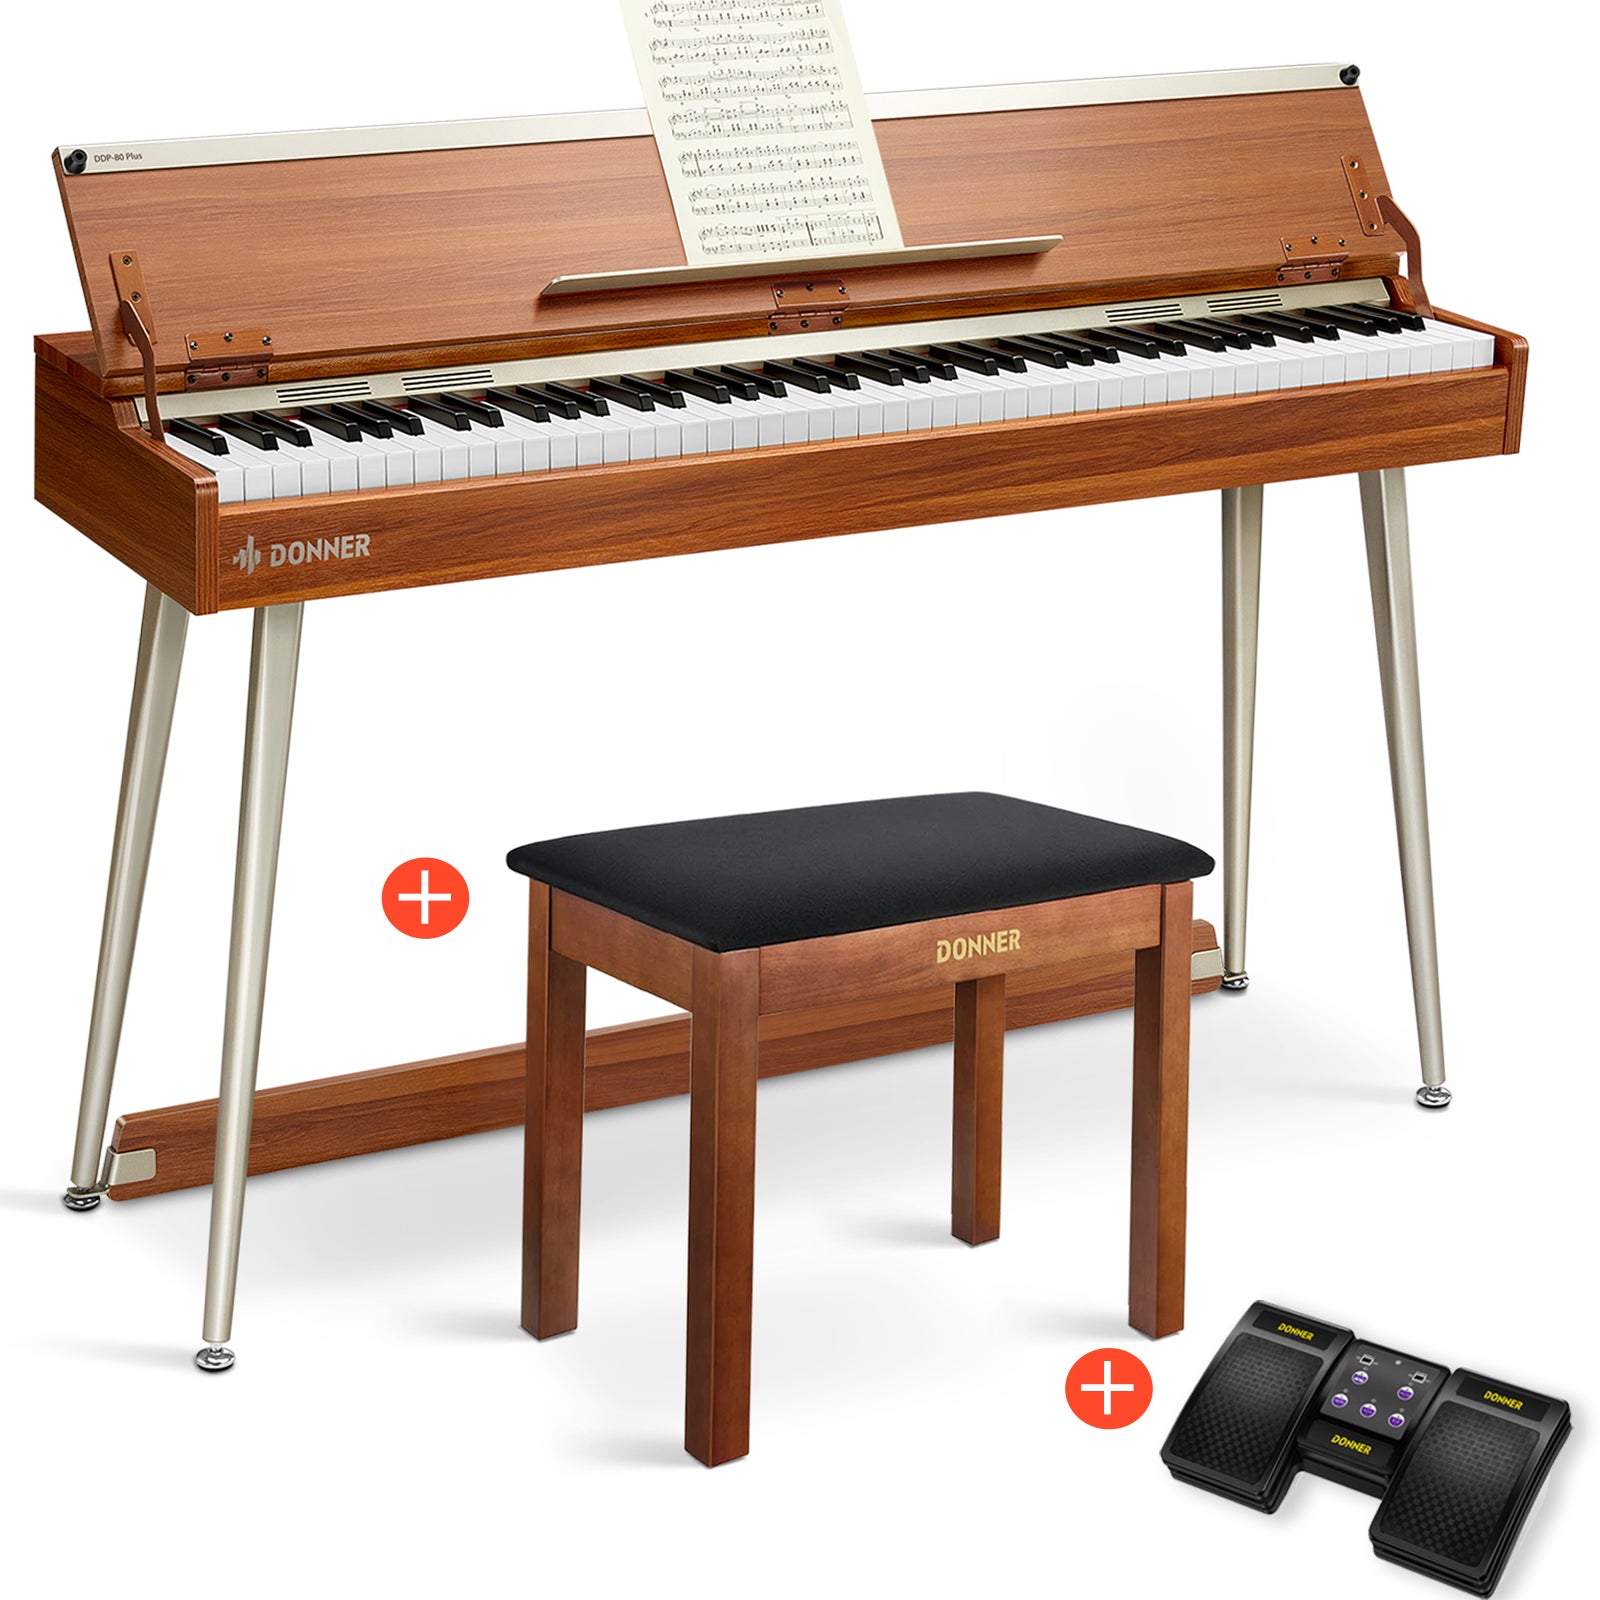 Donner DDP-80 PLUS Digitalpiano Minimalistisches Holzdesign - Piano + Brauner Klavierbank + Page Turner von Donner